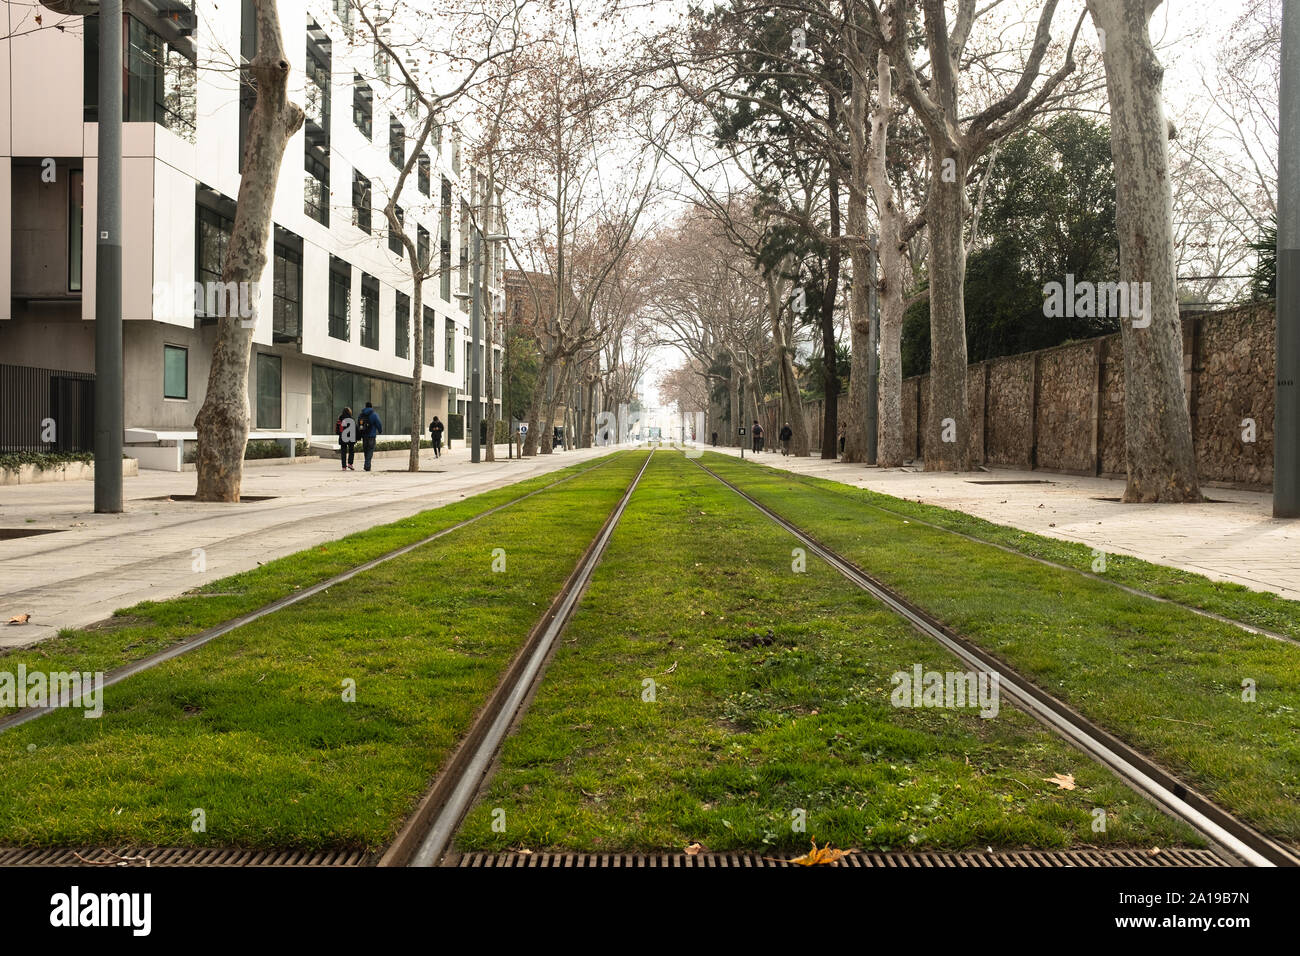 Rückfahrt von der Straßenbahn in der Nähe des Campus de la Ciutadella (Pompeo Fabra University) in Barcelona (Spanien). Straßenbahn ist nur kaum sichtbar, in der di Stockfoto